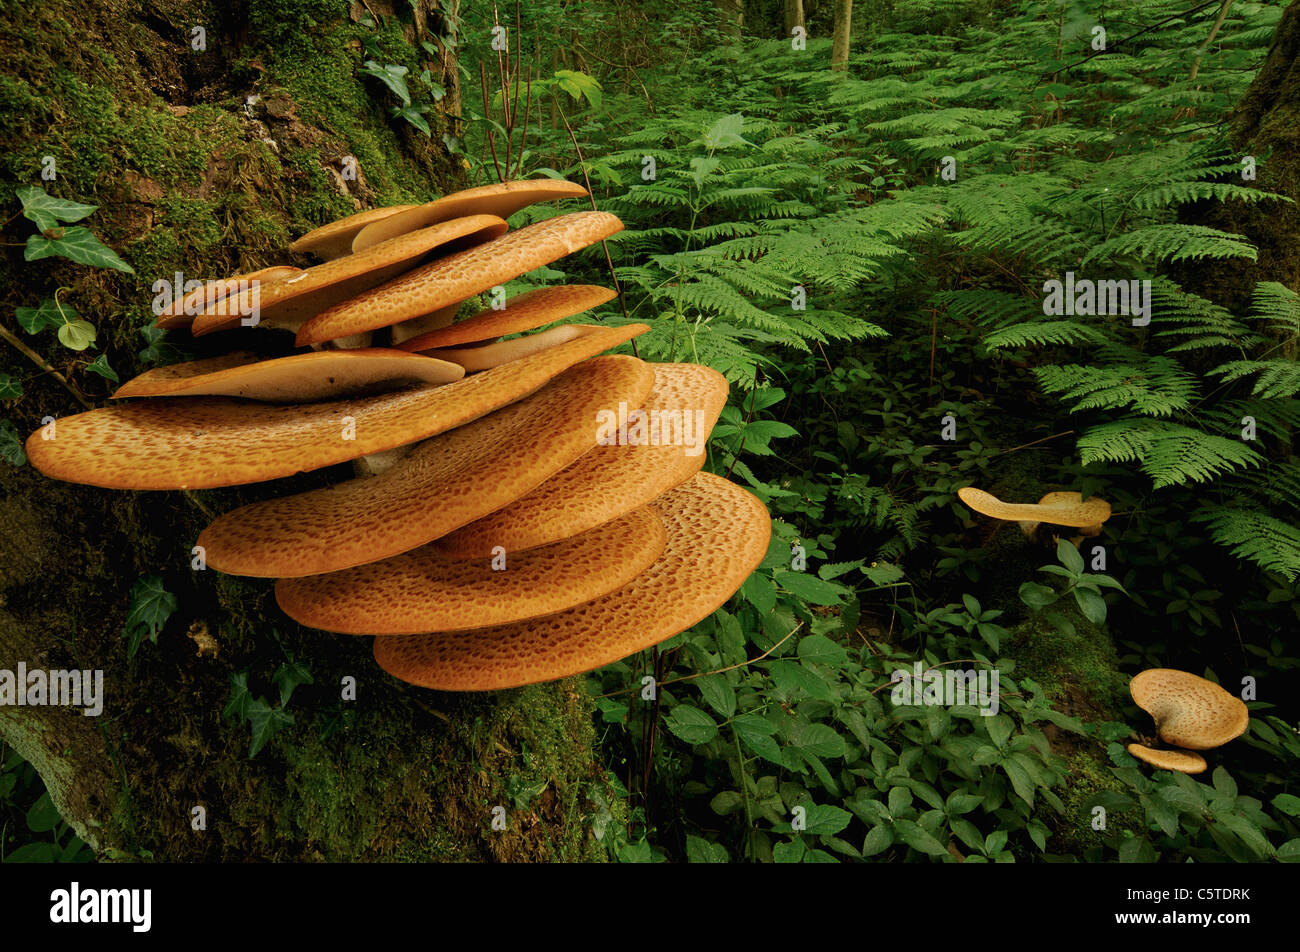 Die Dryade Sattel Polyporus an außergewöhnliches Beispiel für diese Polypore Pilz wächst in einem Laubwald.  Derbyshire, UK Stockfoto